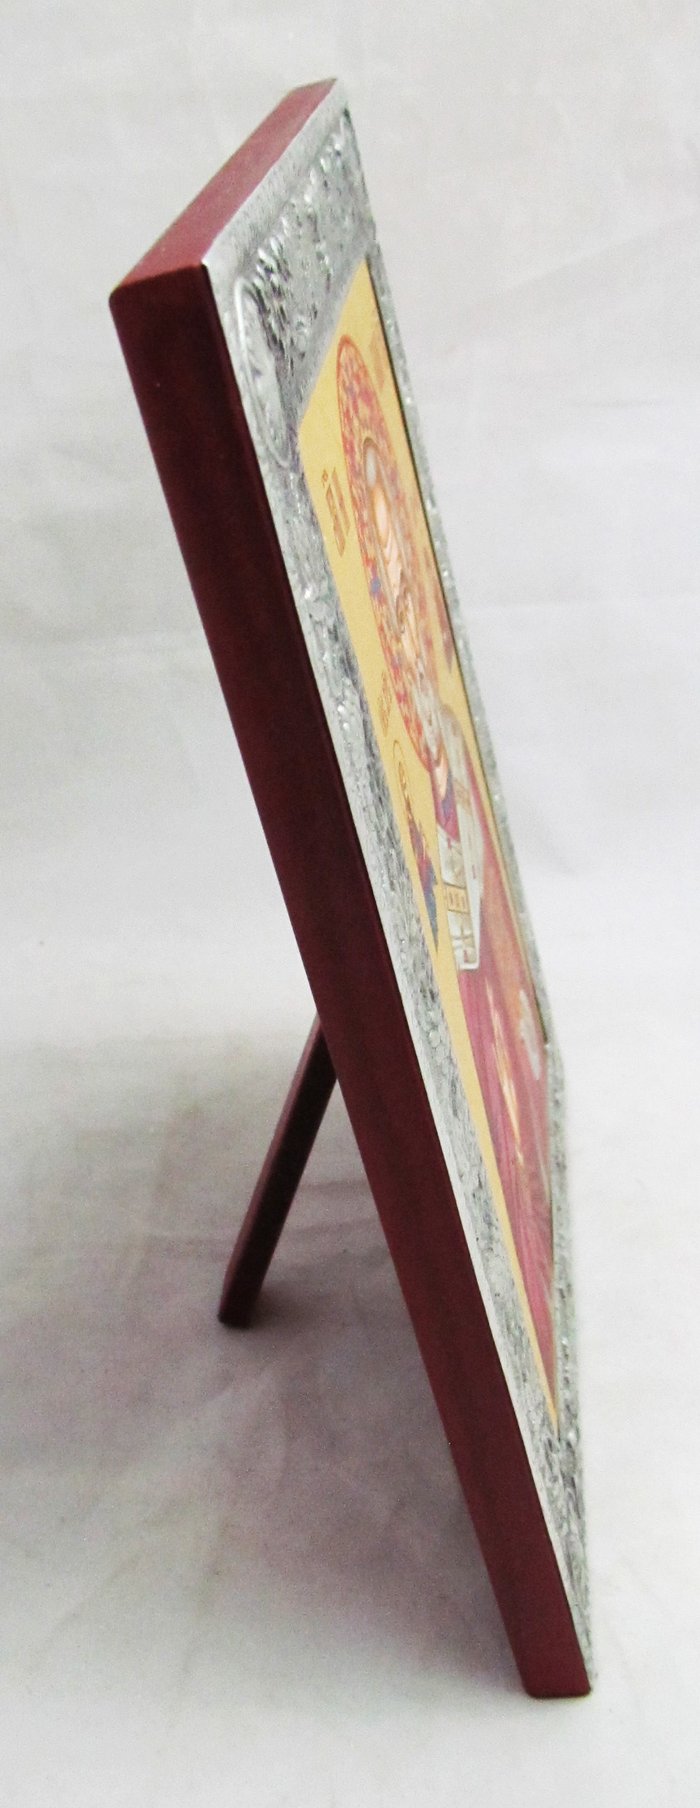 Икона Николай святитель Чудотворец шелкография 16,5х21,7 см МДФ поталь на подставке